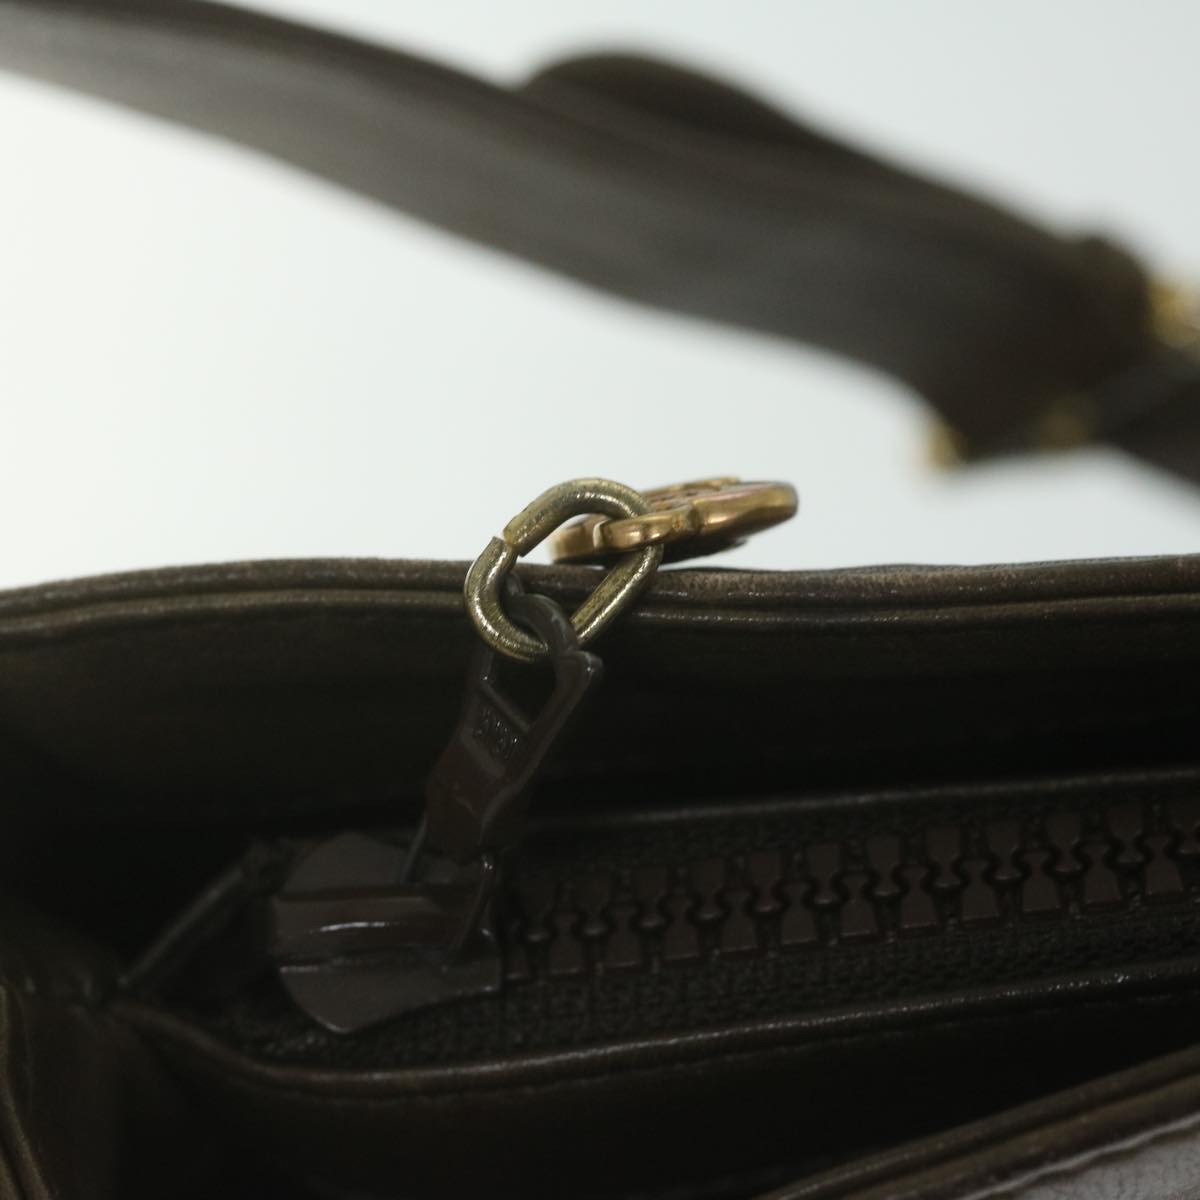 CELINE Shoulder Bag Leather Brown Auth fm3022